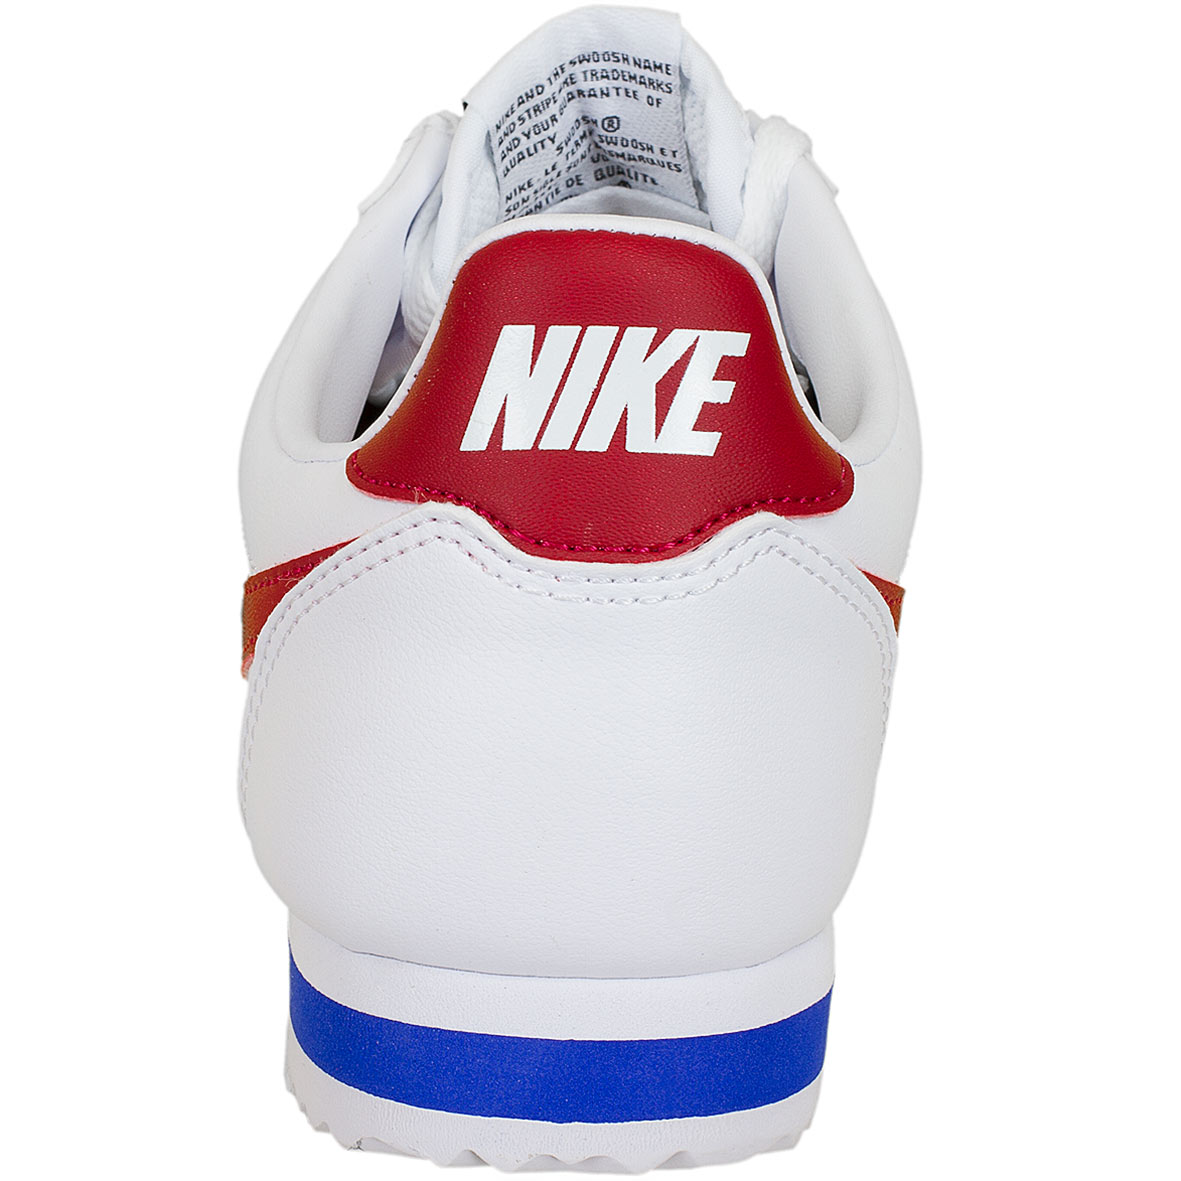 ☆ Nike Damen Sneaker Classic Cortez Leather weiß/rot - hier bestellen!